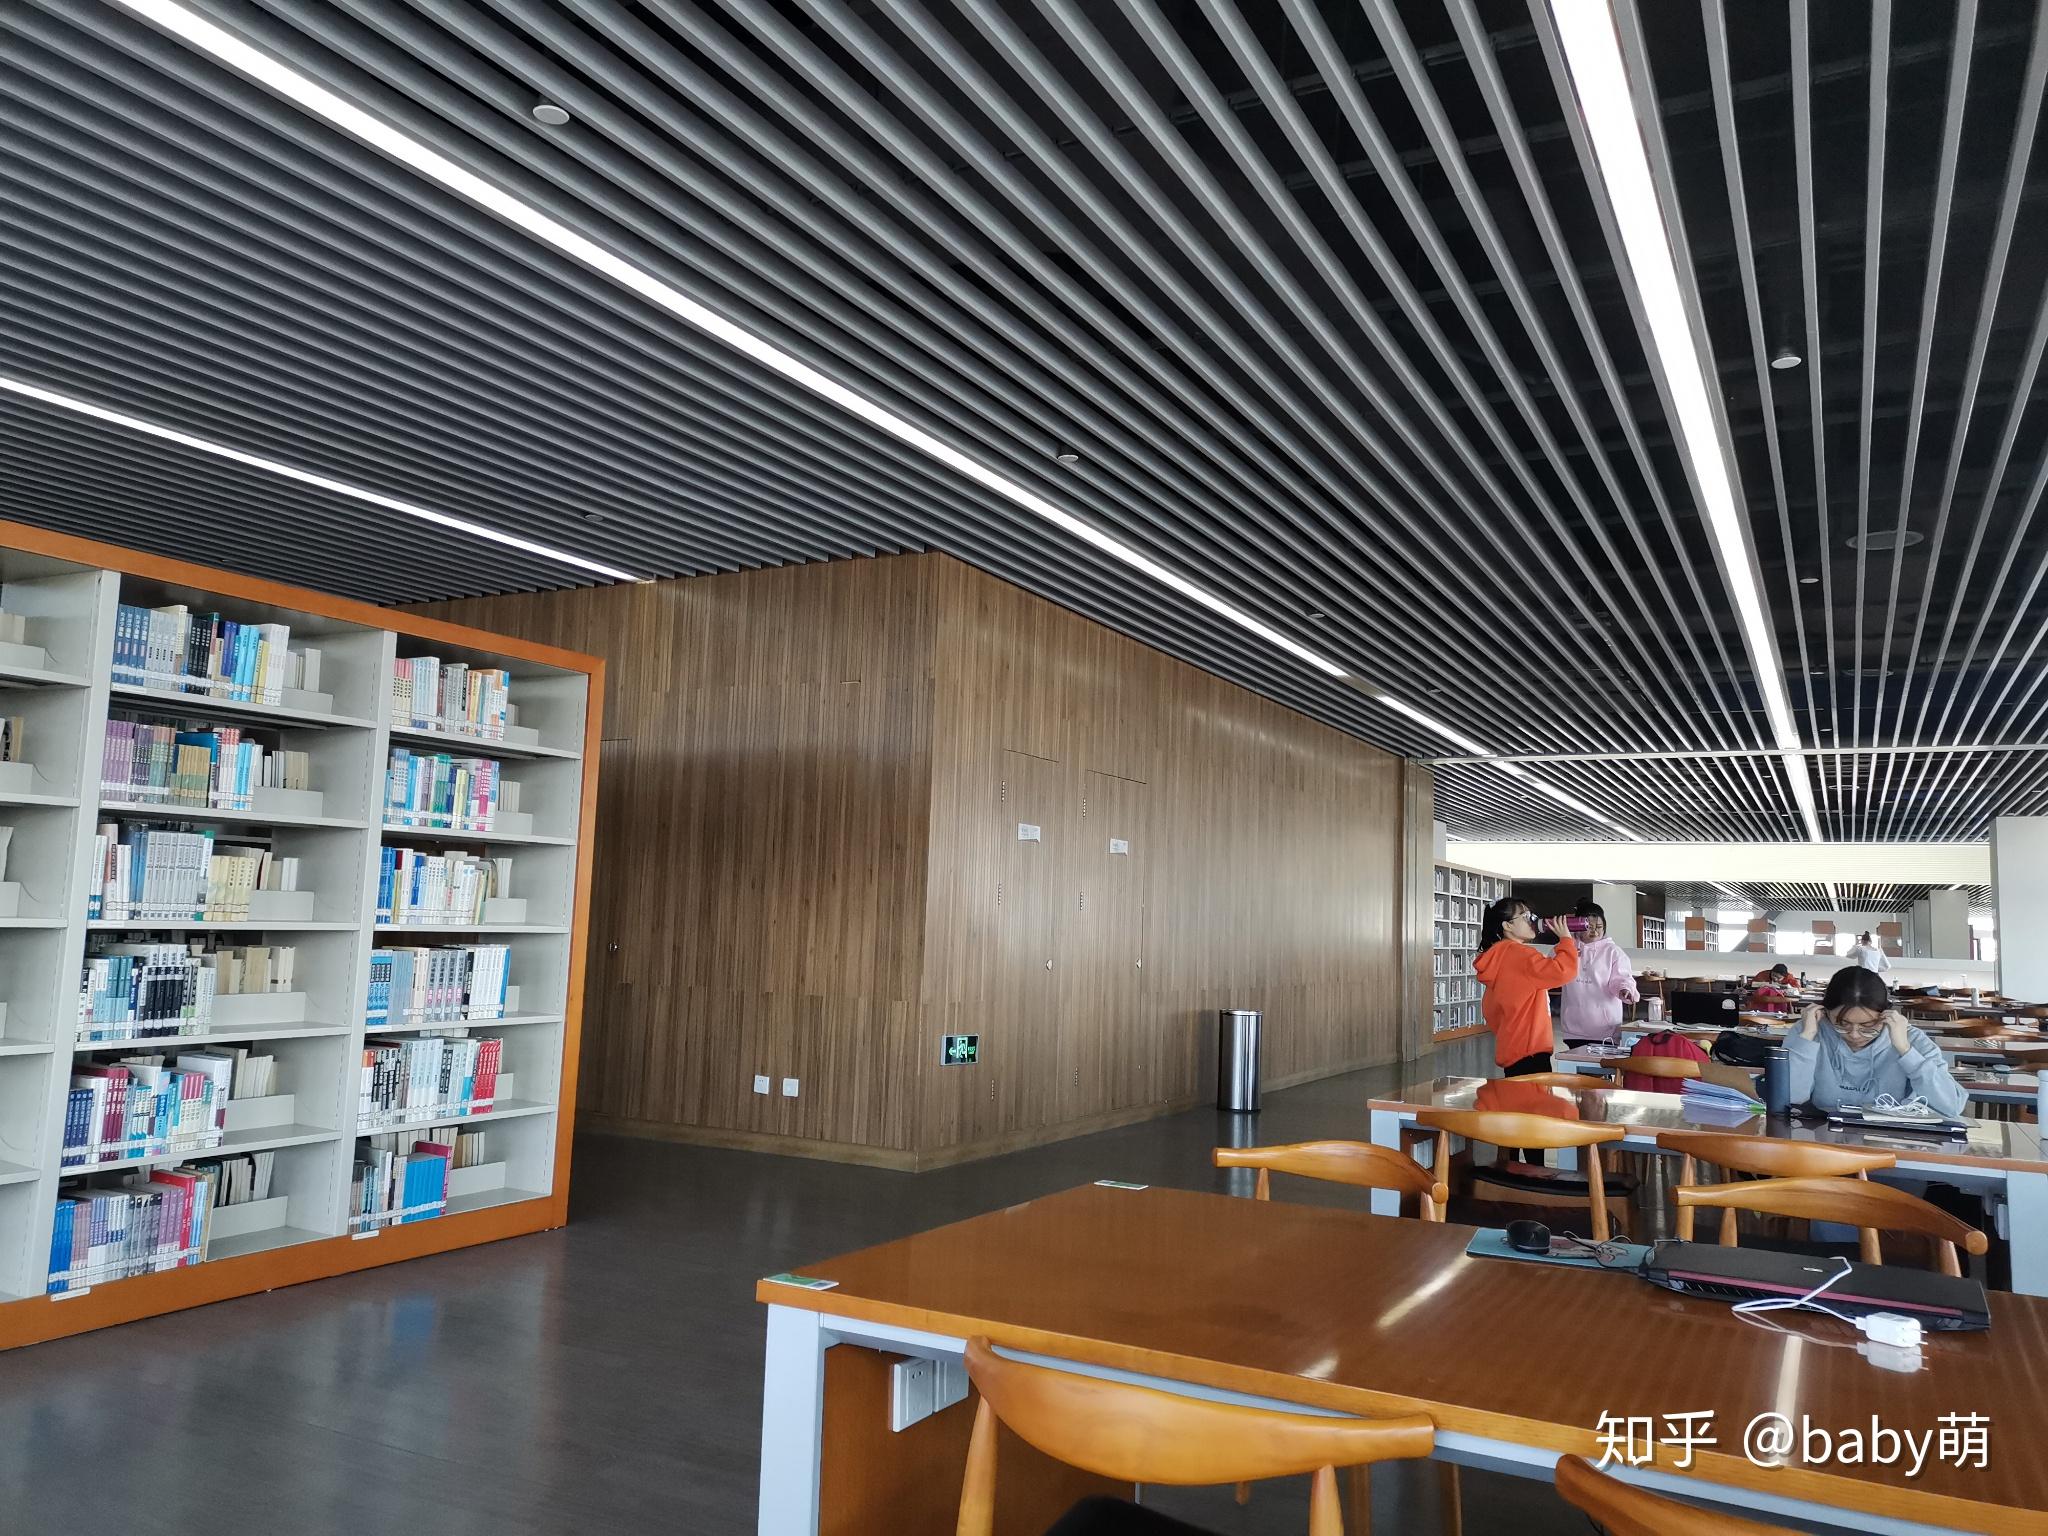 河北工业大学的图书馆或教室环境如何是否适合上自习